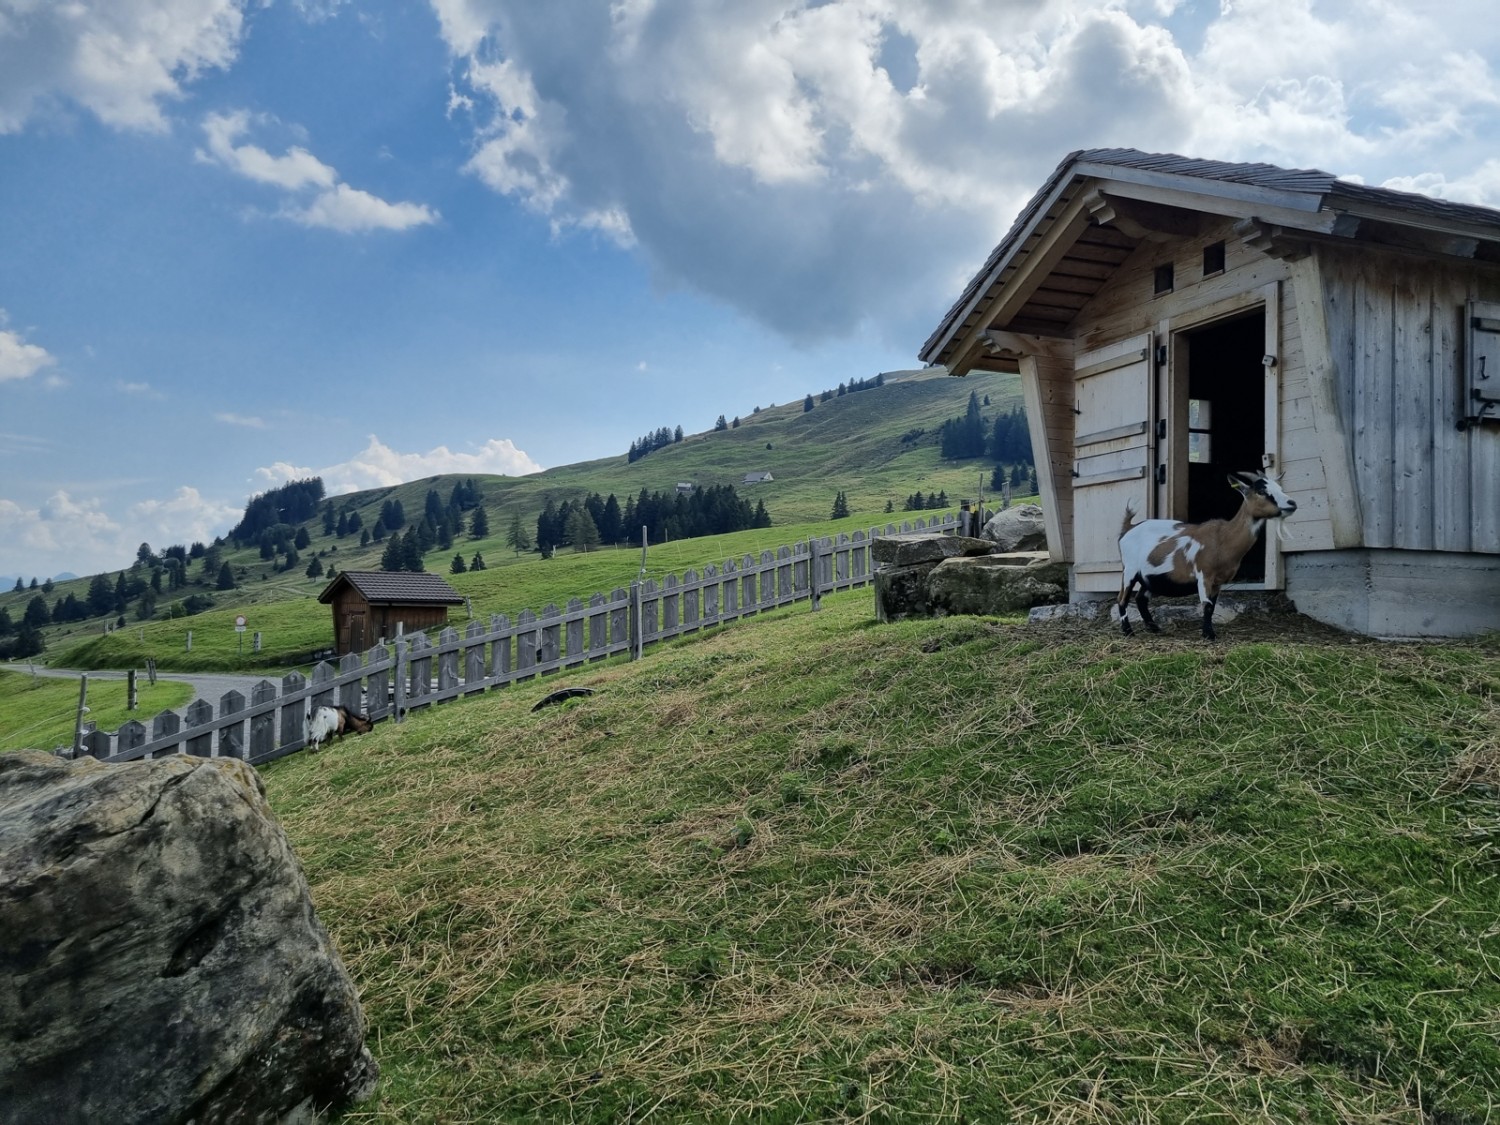 Compagnes de route divertissantes: les chèvres naines curieuses du Berggasthaus Eggli ne manquent jamais de faire sourire les hôtes. Photo: Natalie Stöckli